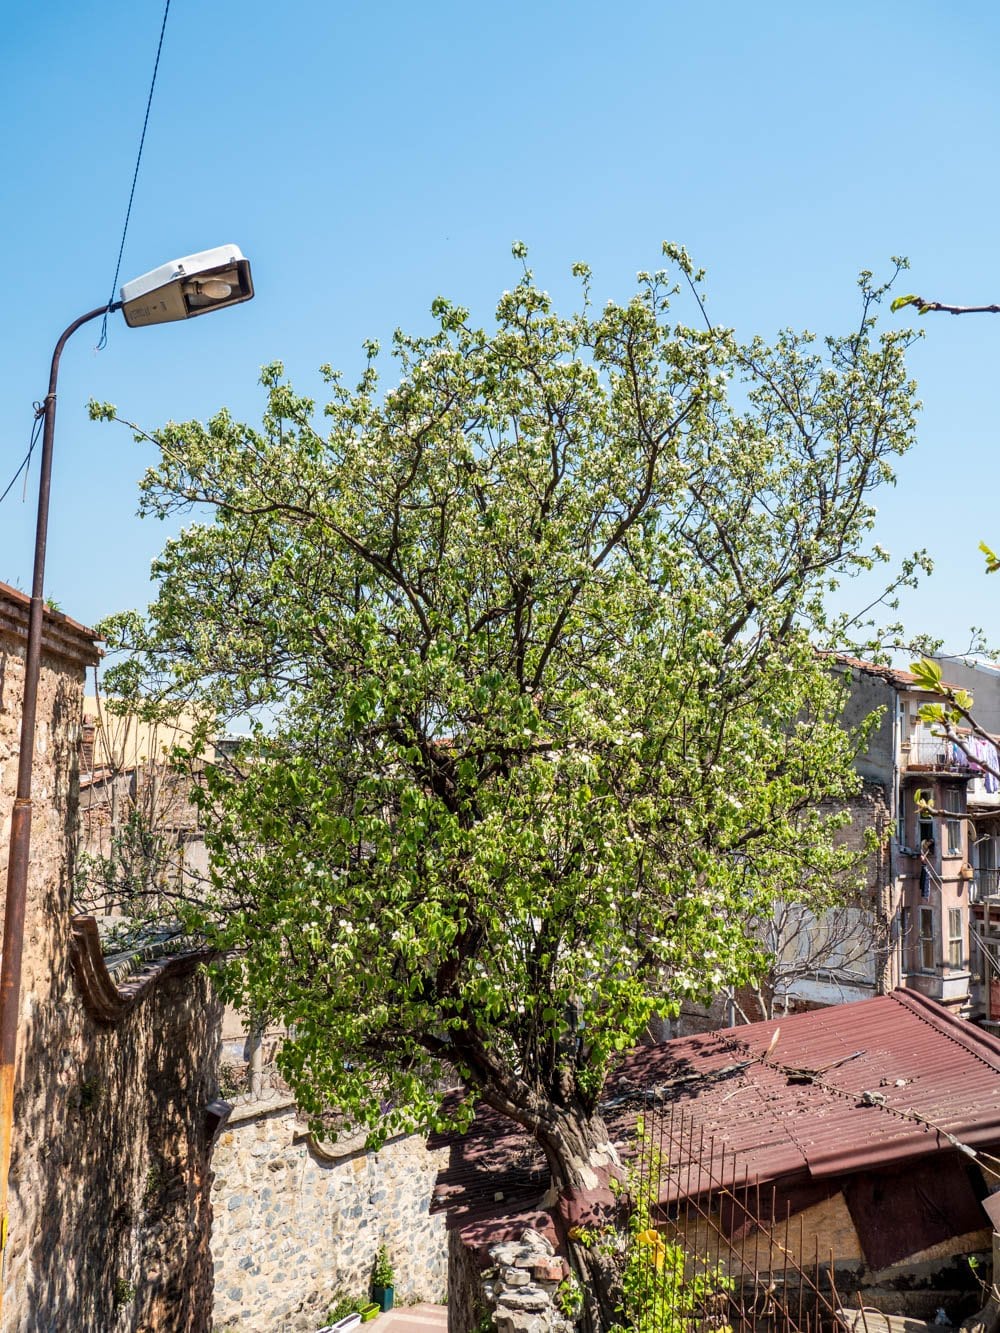 Kvedetre i grønn blomst i Fener / Balat, Istanbul